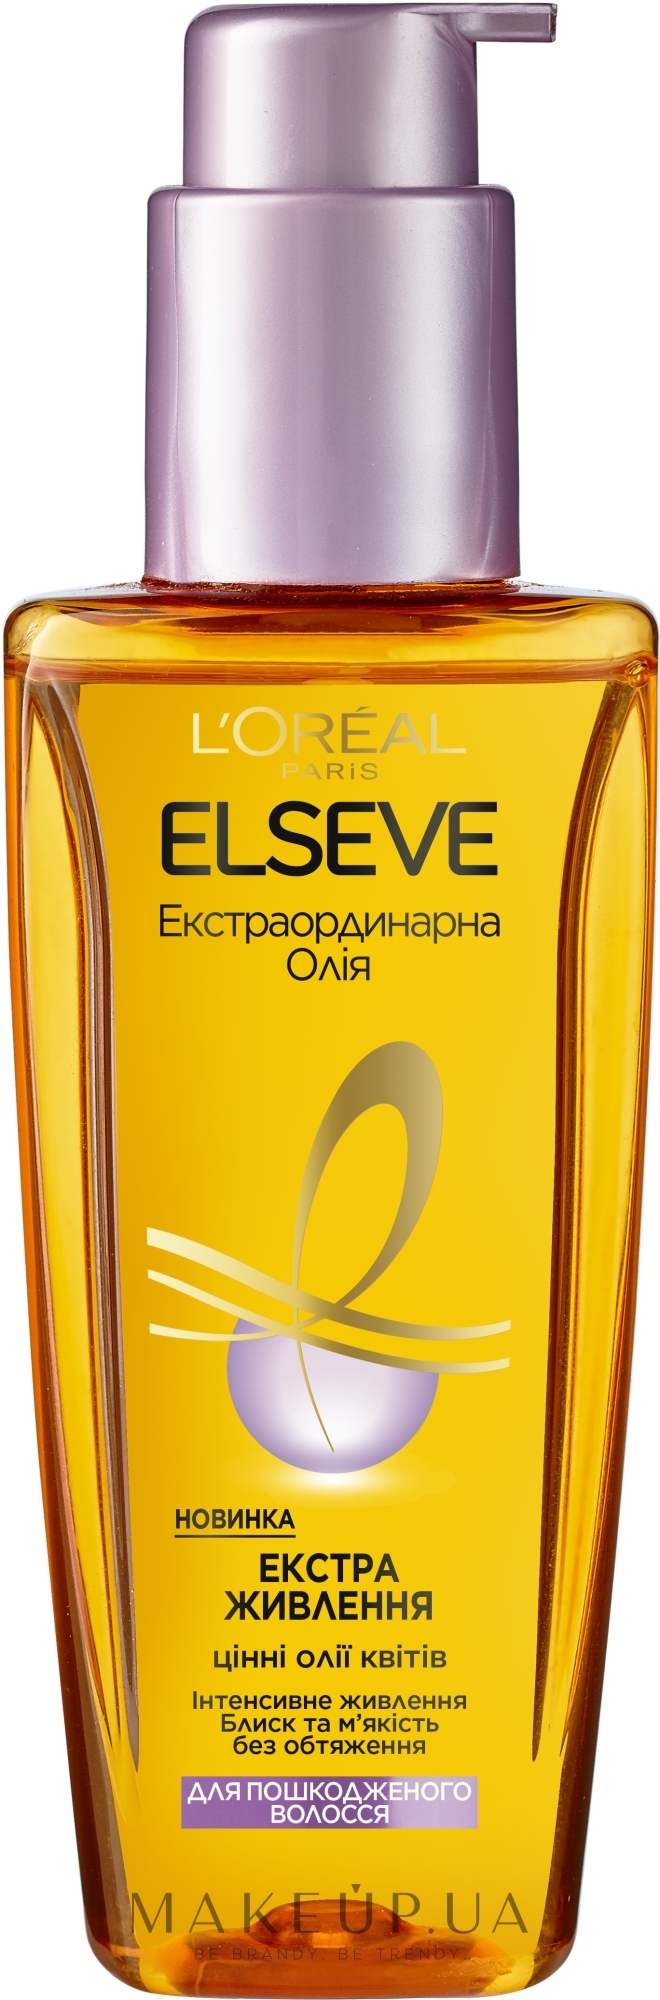 Loreal масло для волос